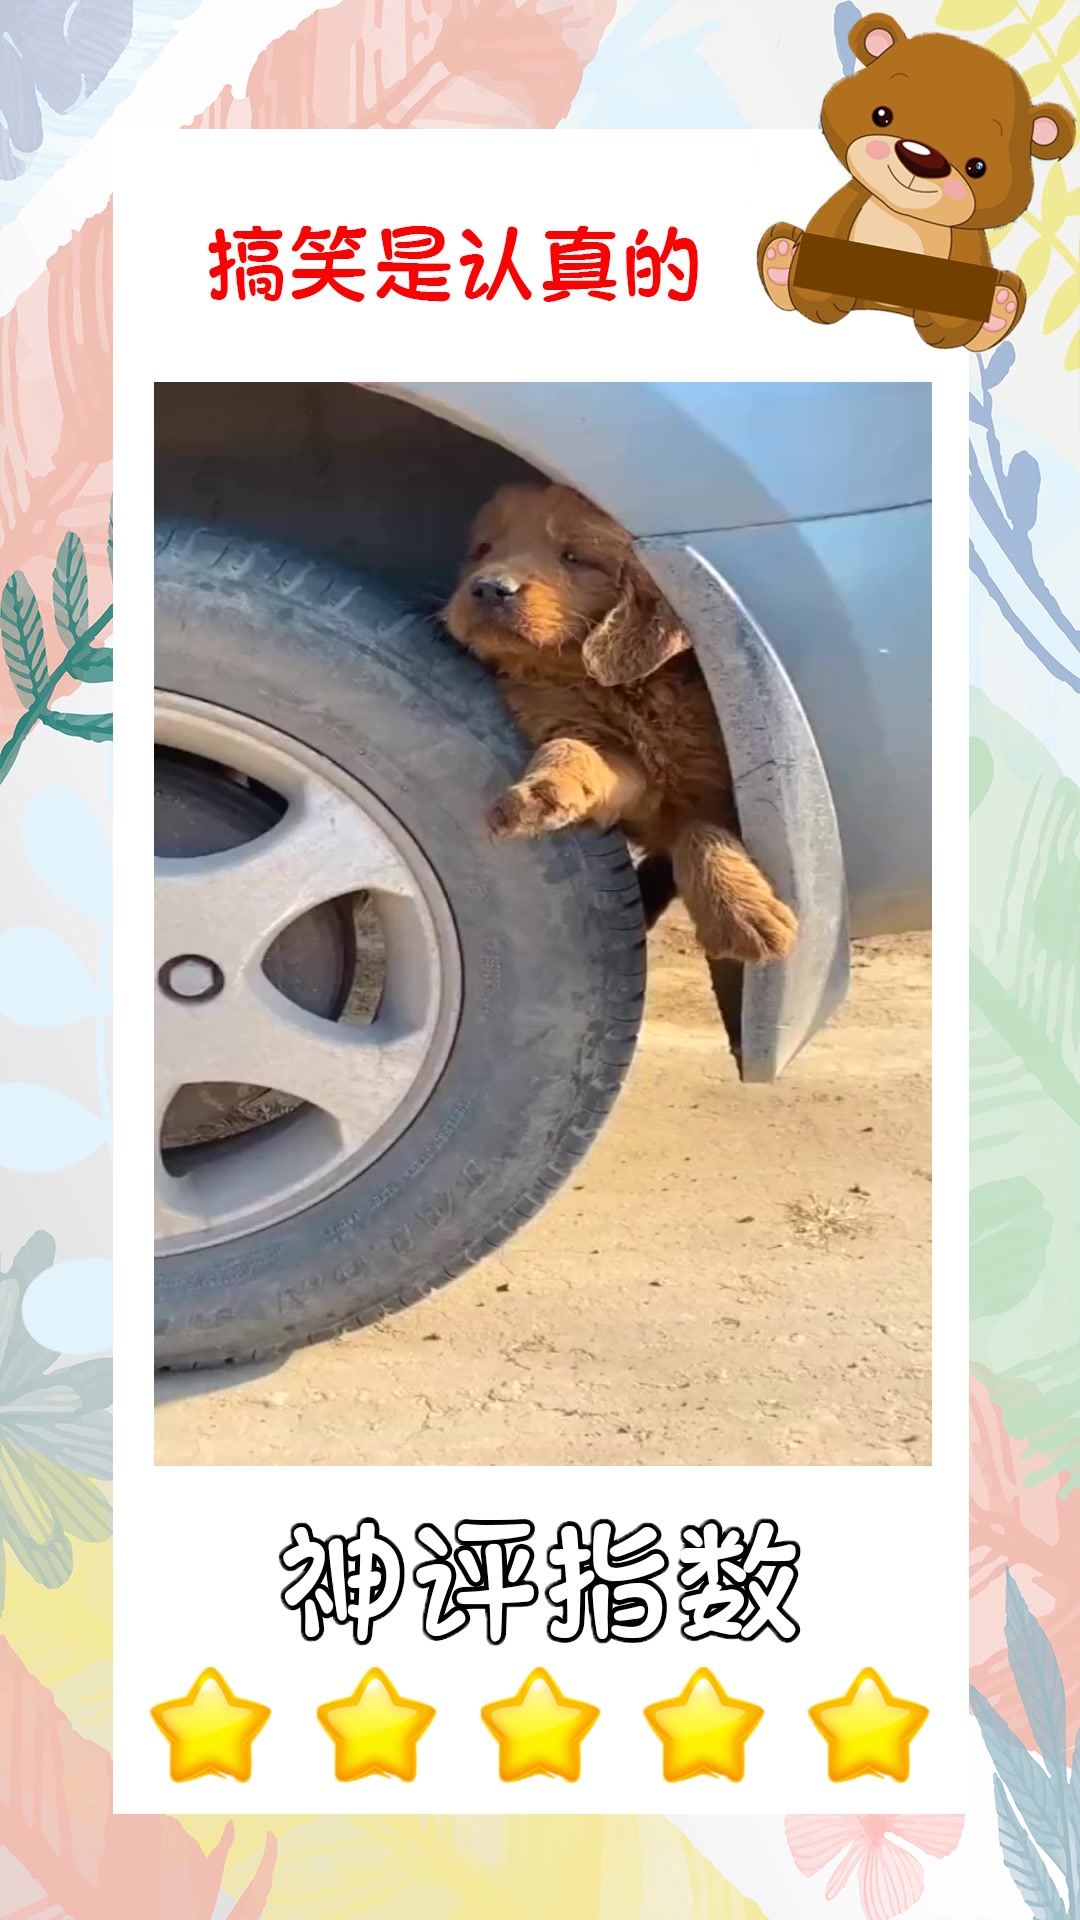 轮胎广告狗被绿了图片